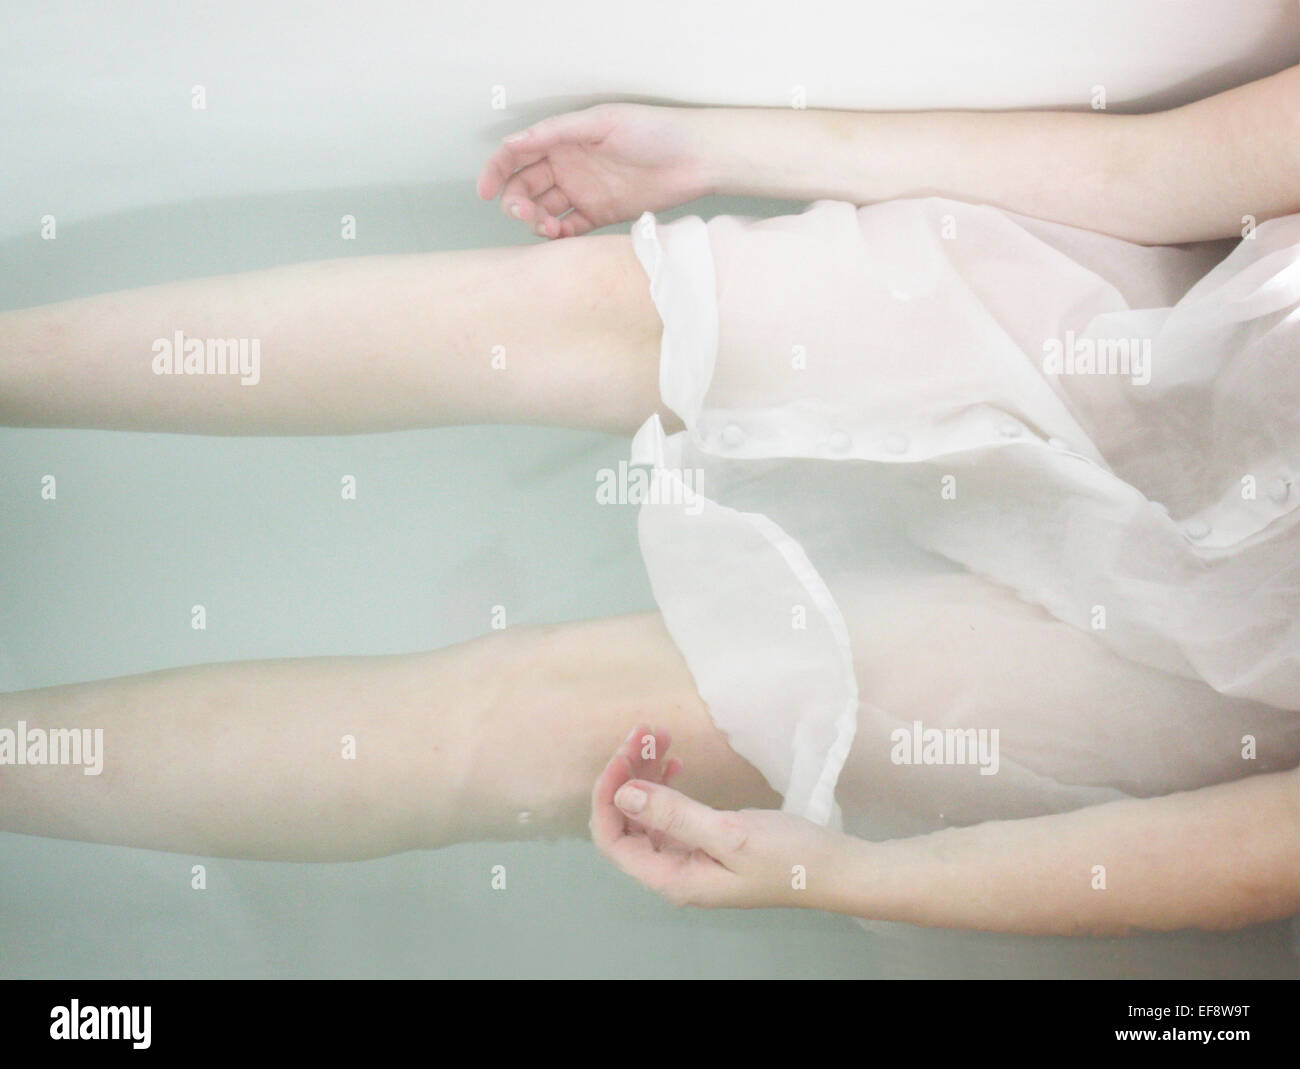 Pale girl in bathtub Stock Photo